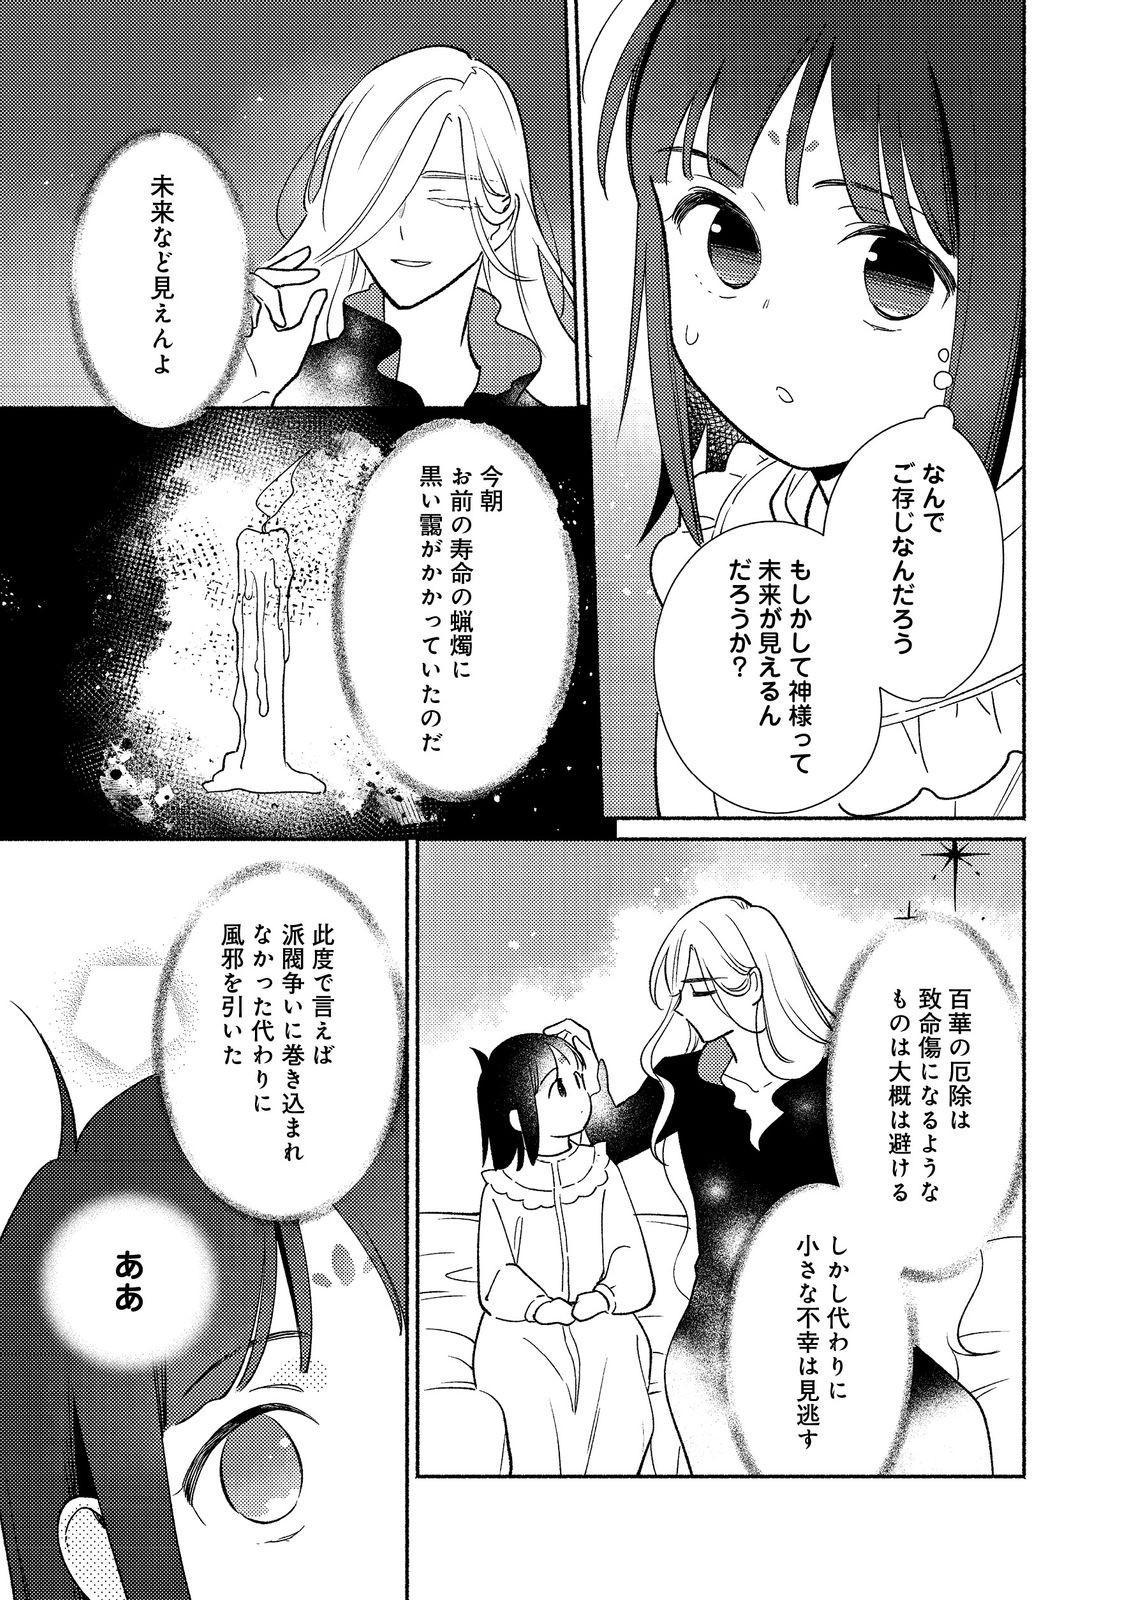 Shirobuta Kizoku desu ga Zense no Kioku ga Haeta node Hiyoko na Otouto Sodatemasu - Chapter 23.2 - Page 2